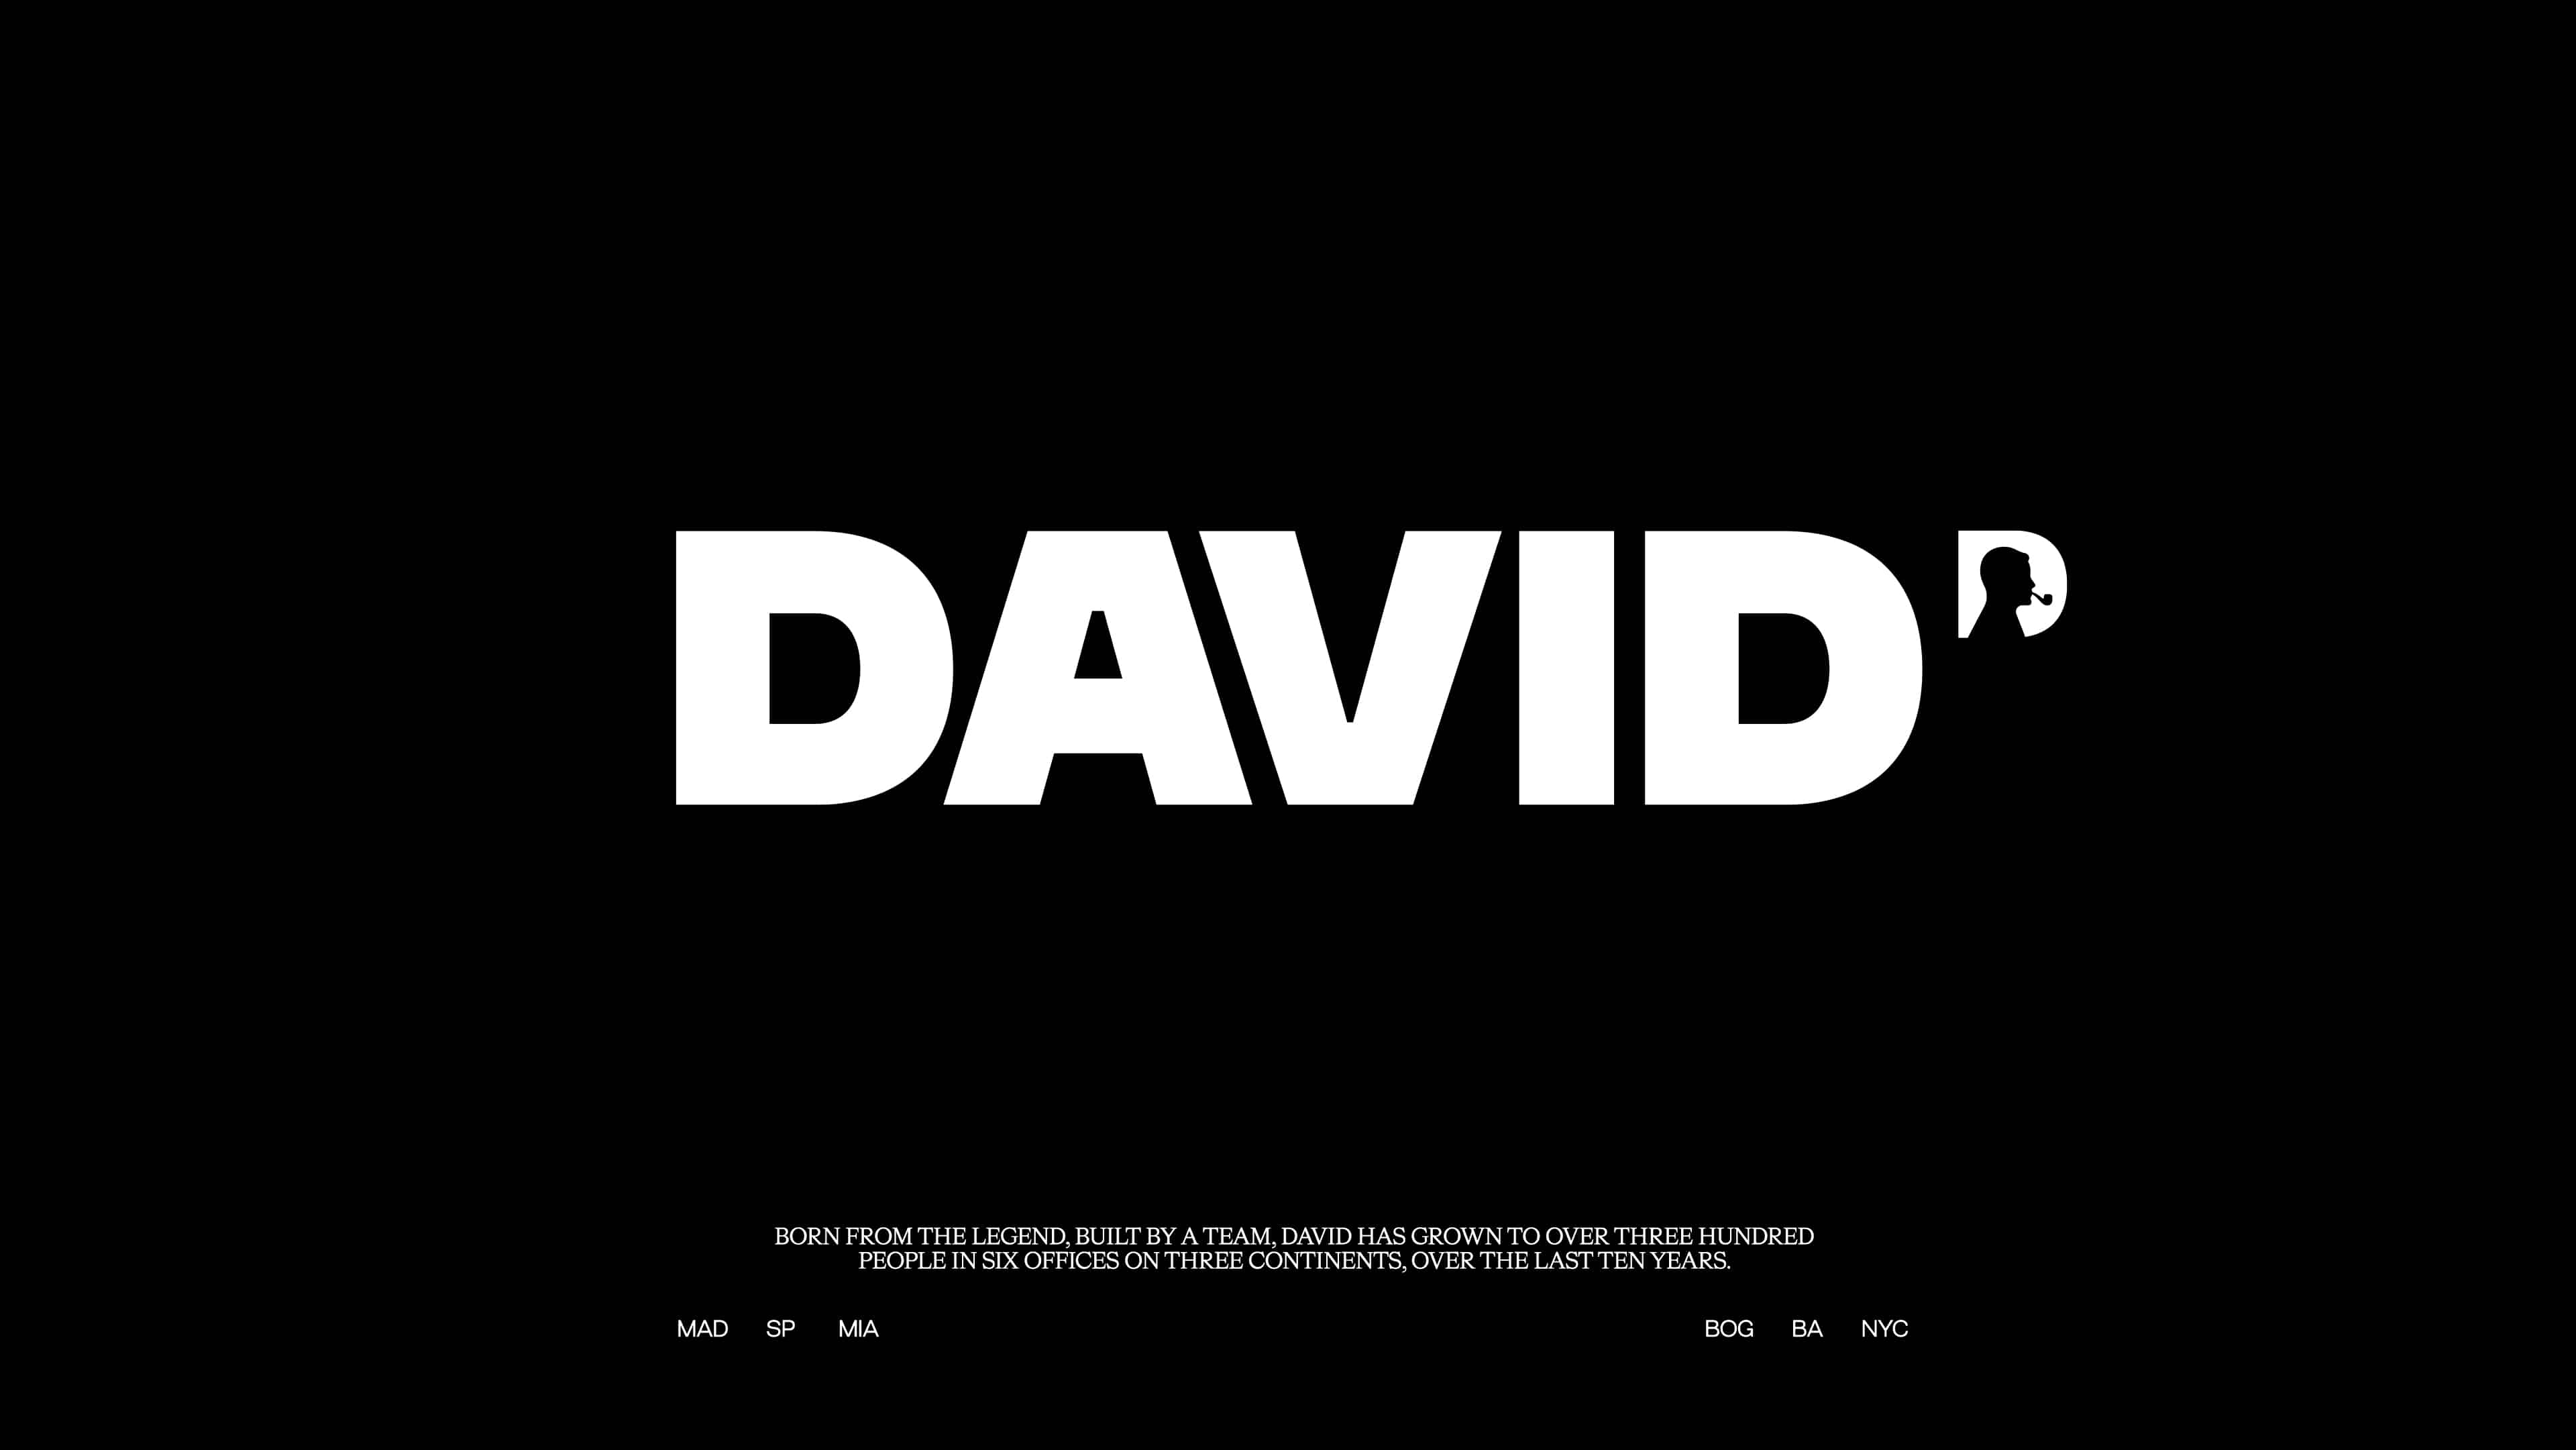 DAVID celebra 10 anos com nova identidade visual